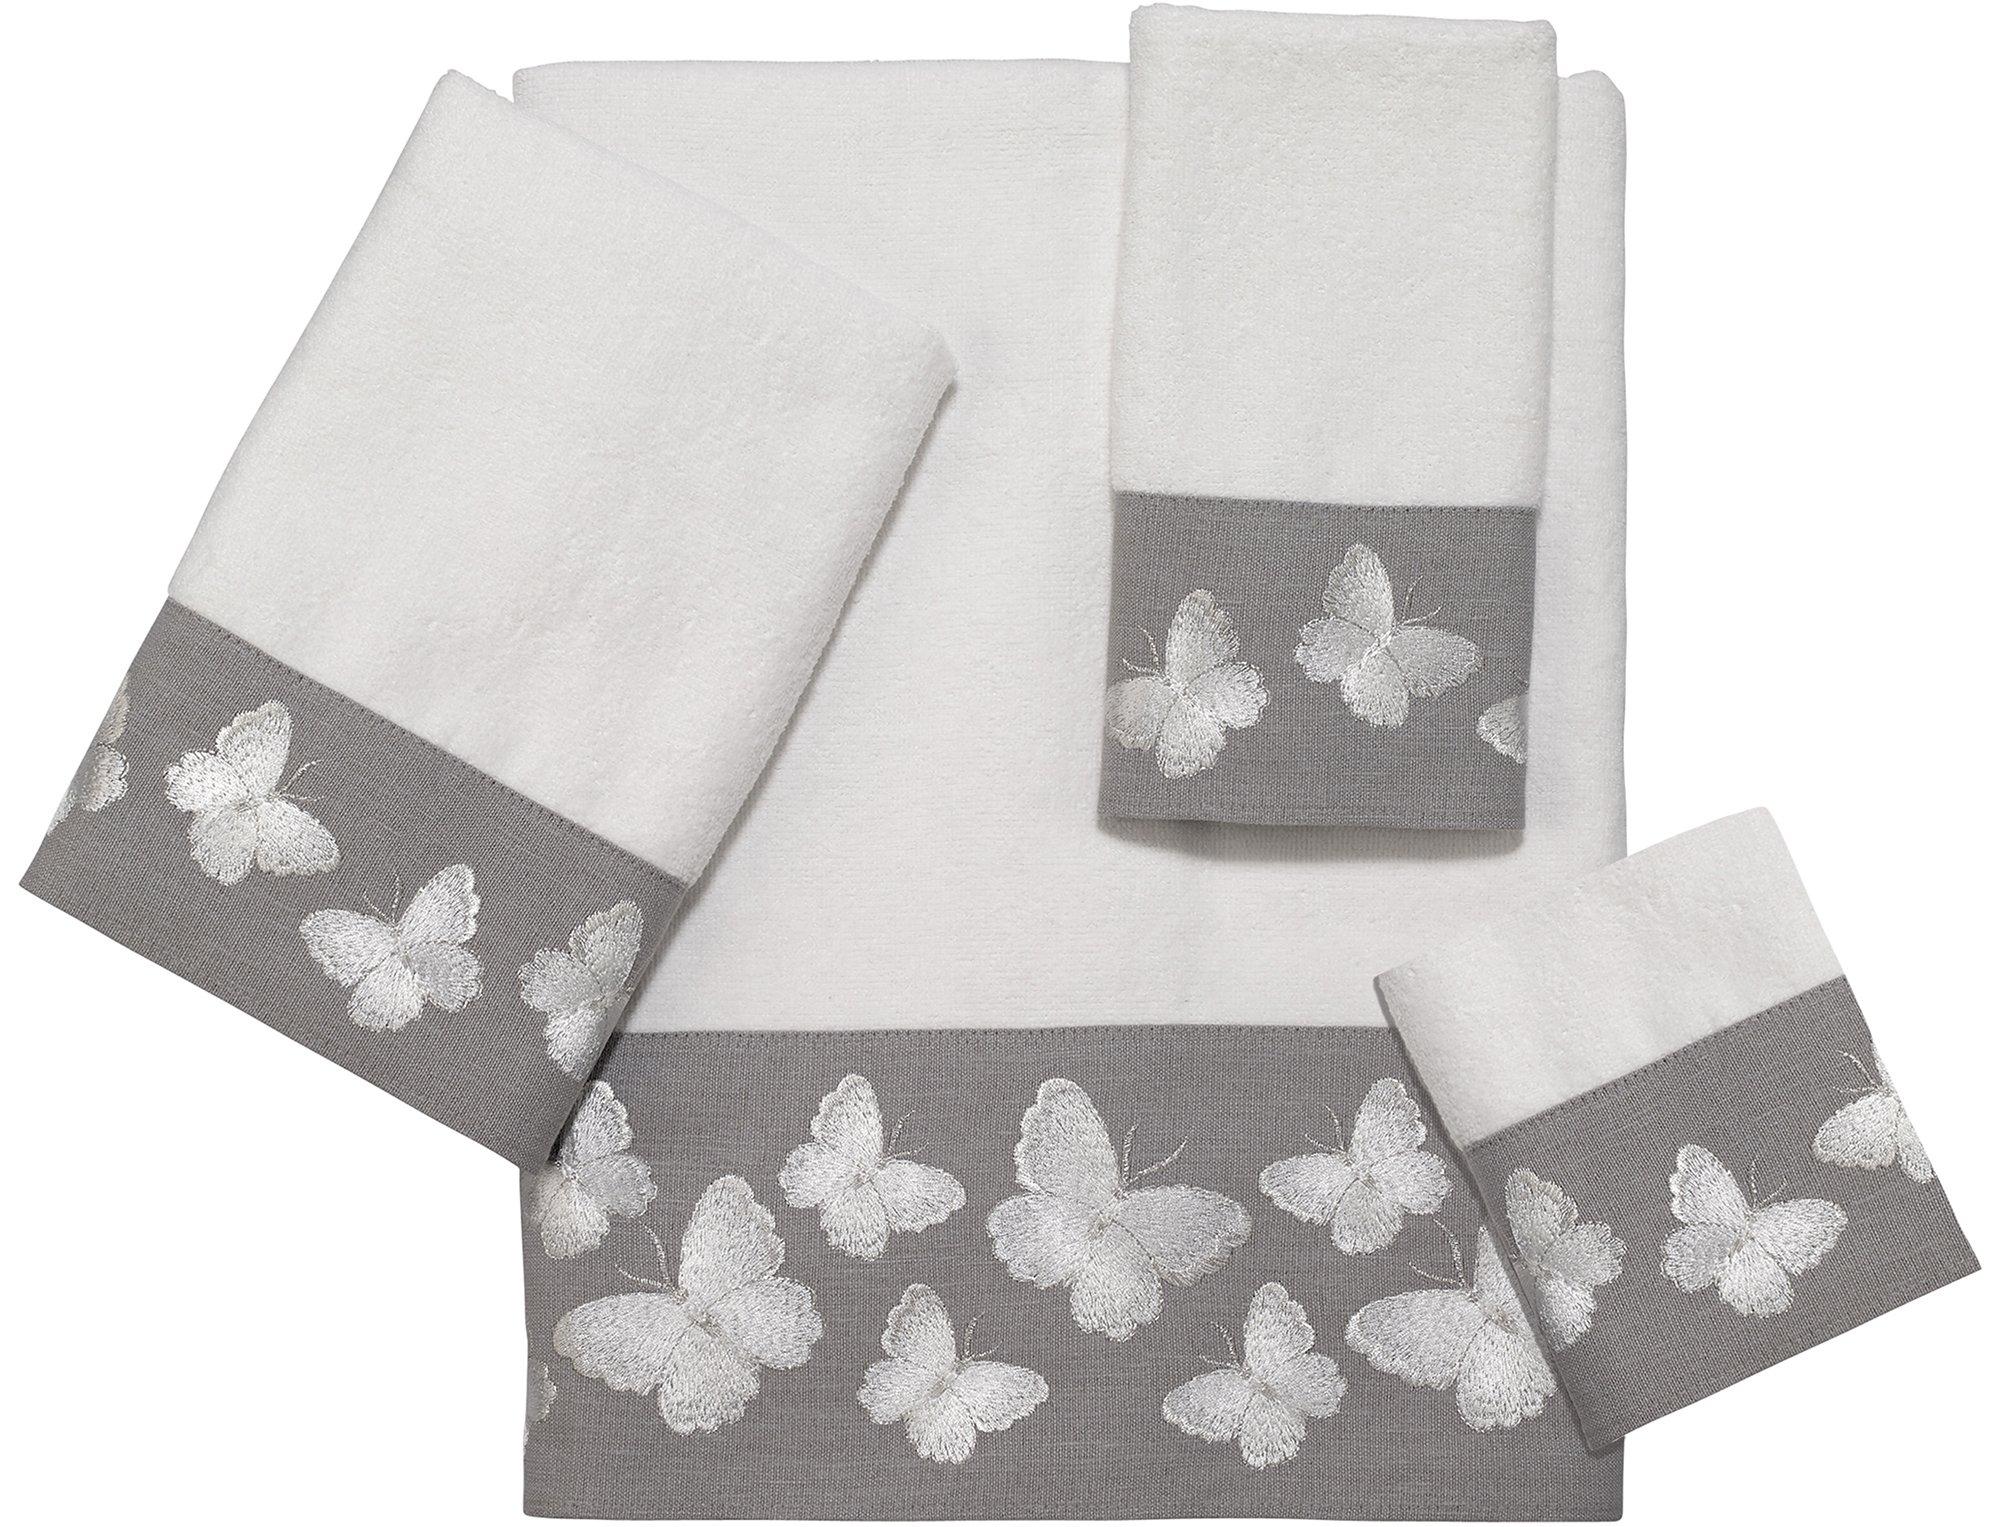 Yara White Towel Collection